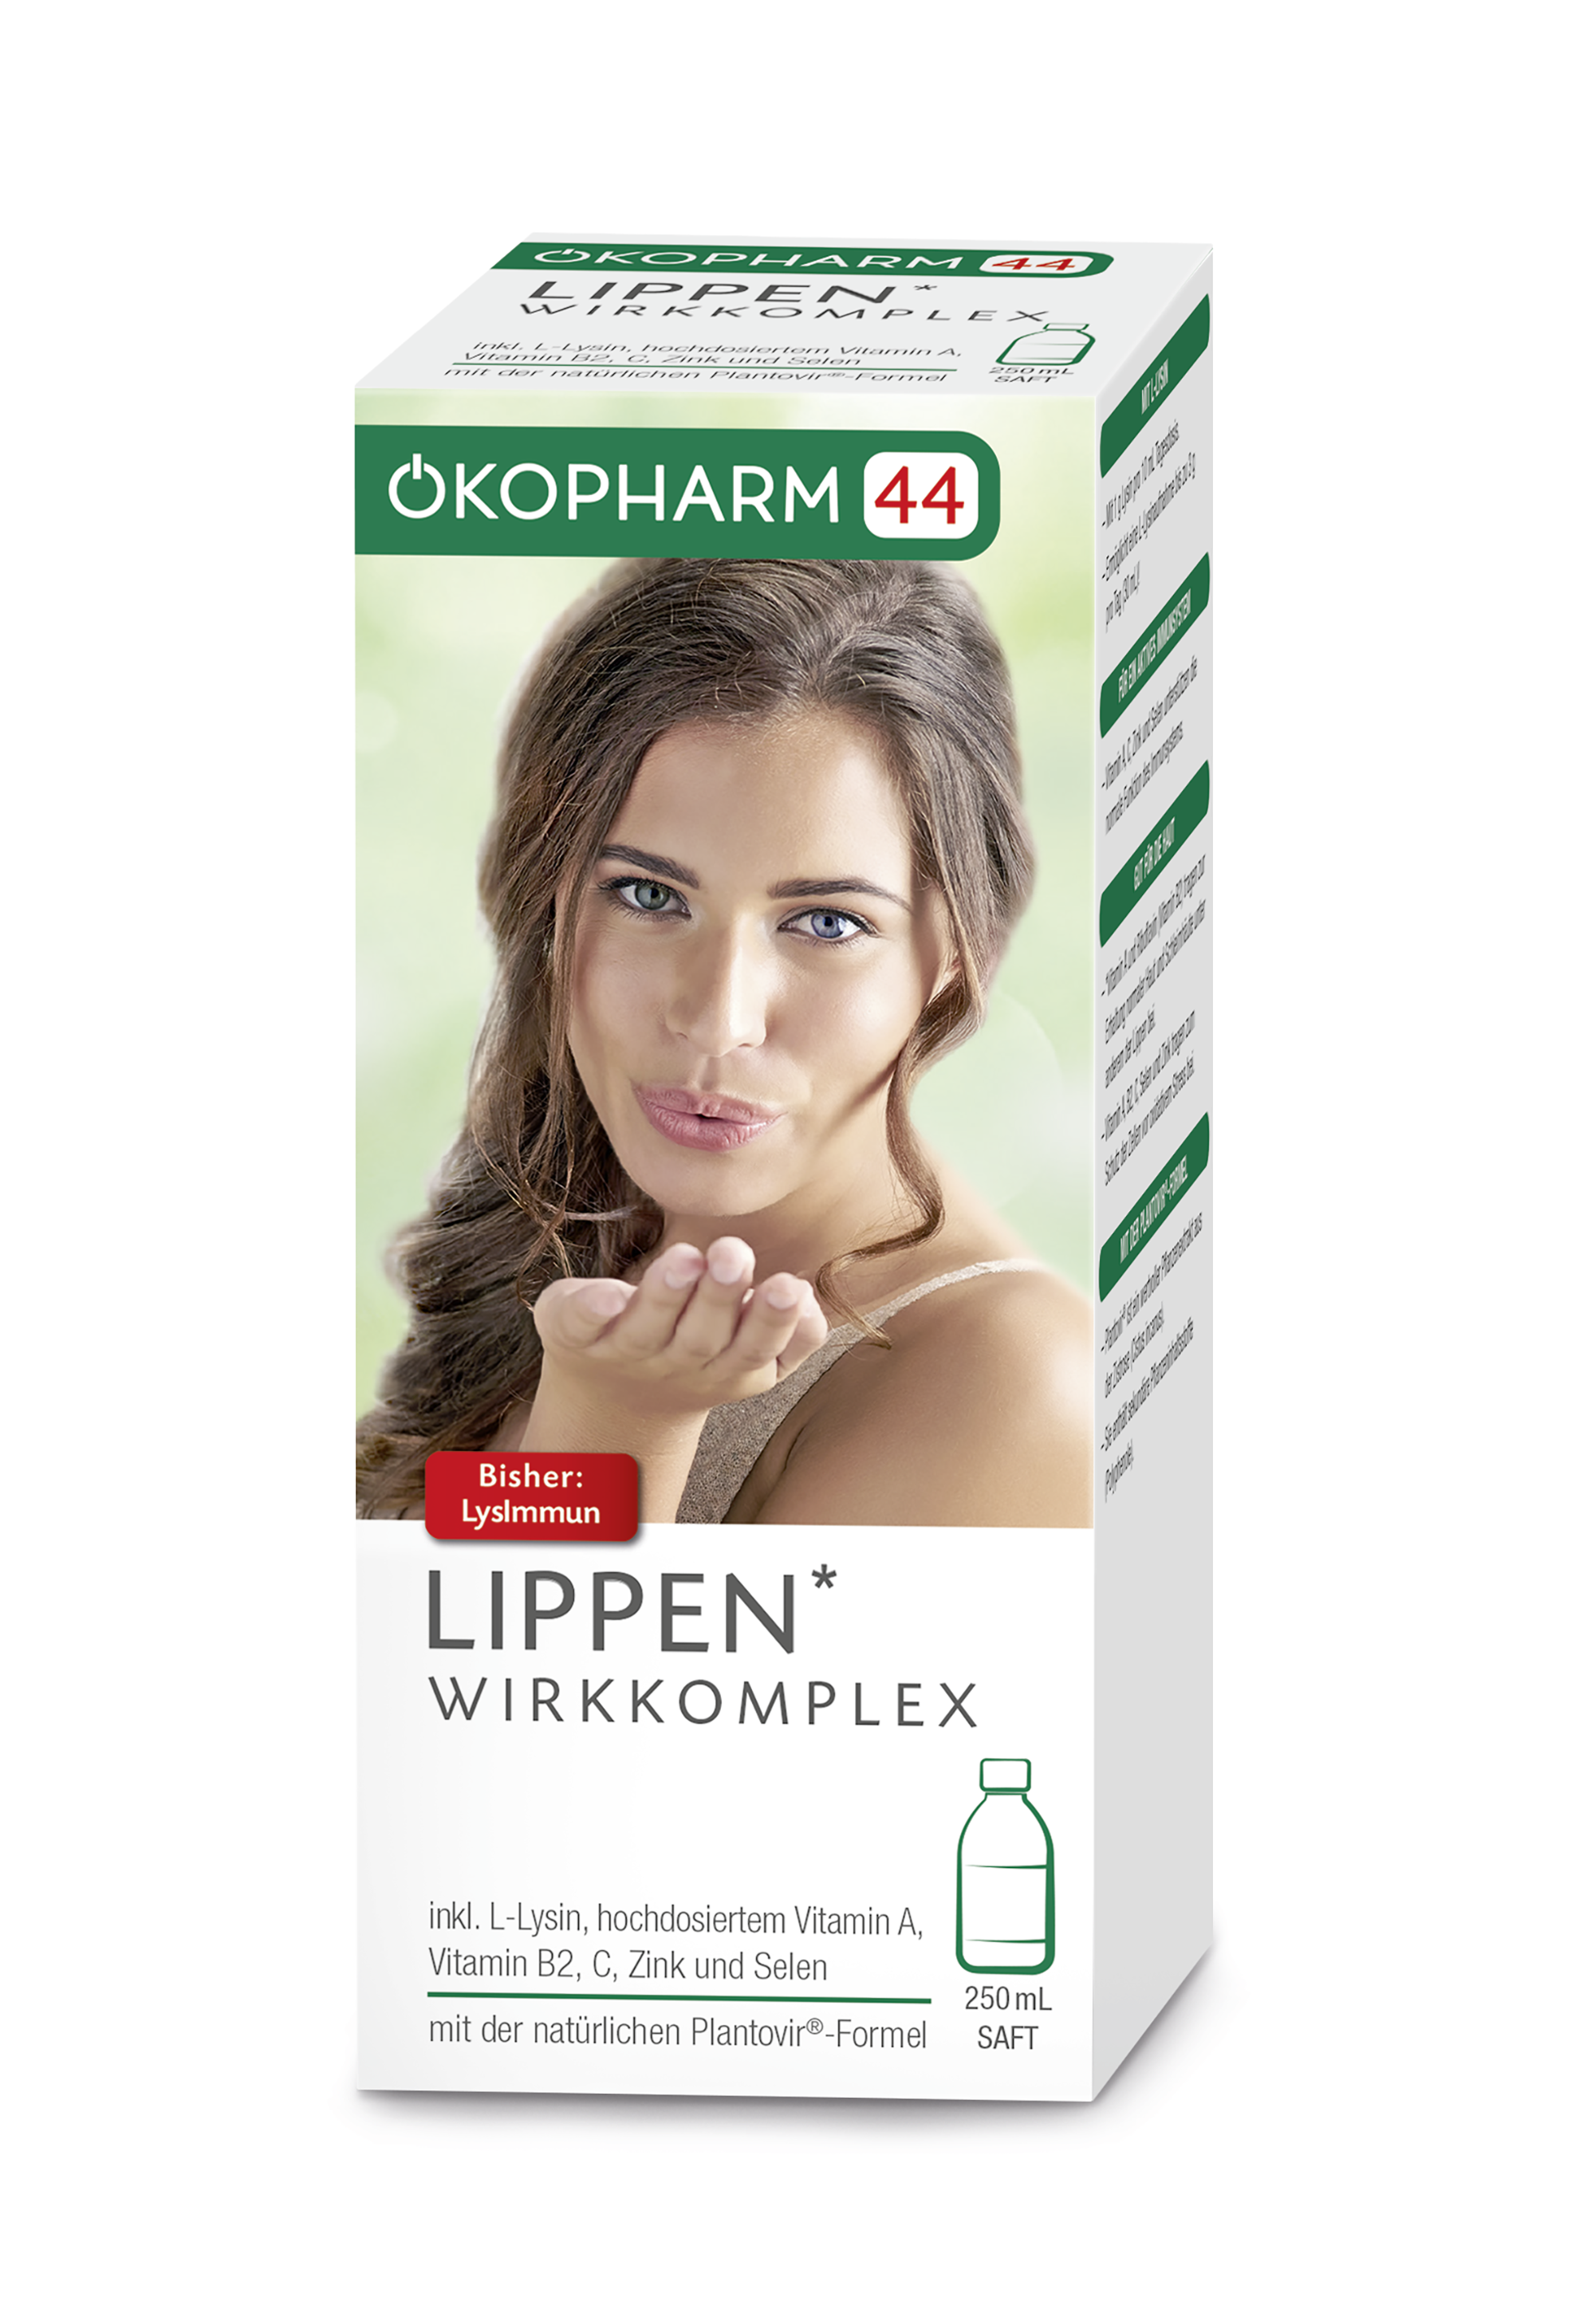 Ökopharm44® Lippen Wirkkomplex Saft 250 mL